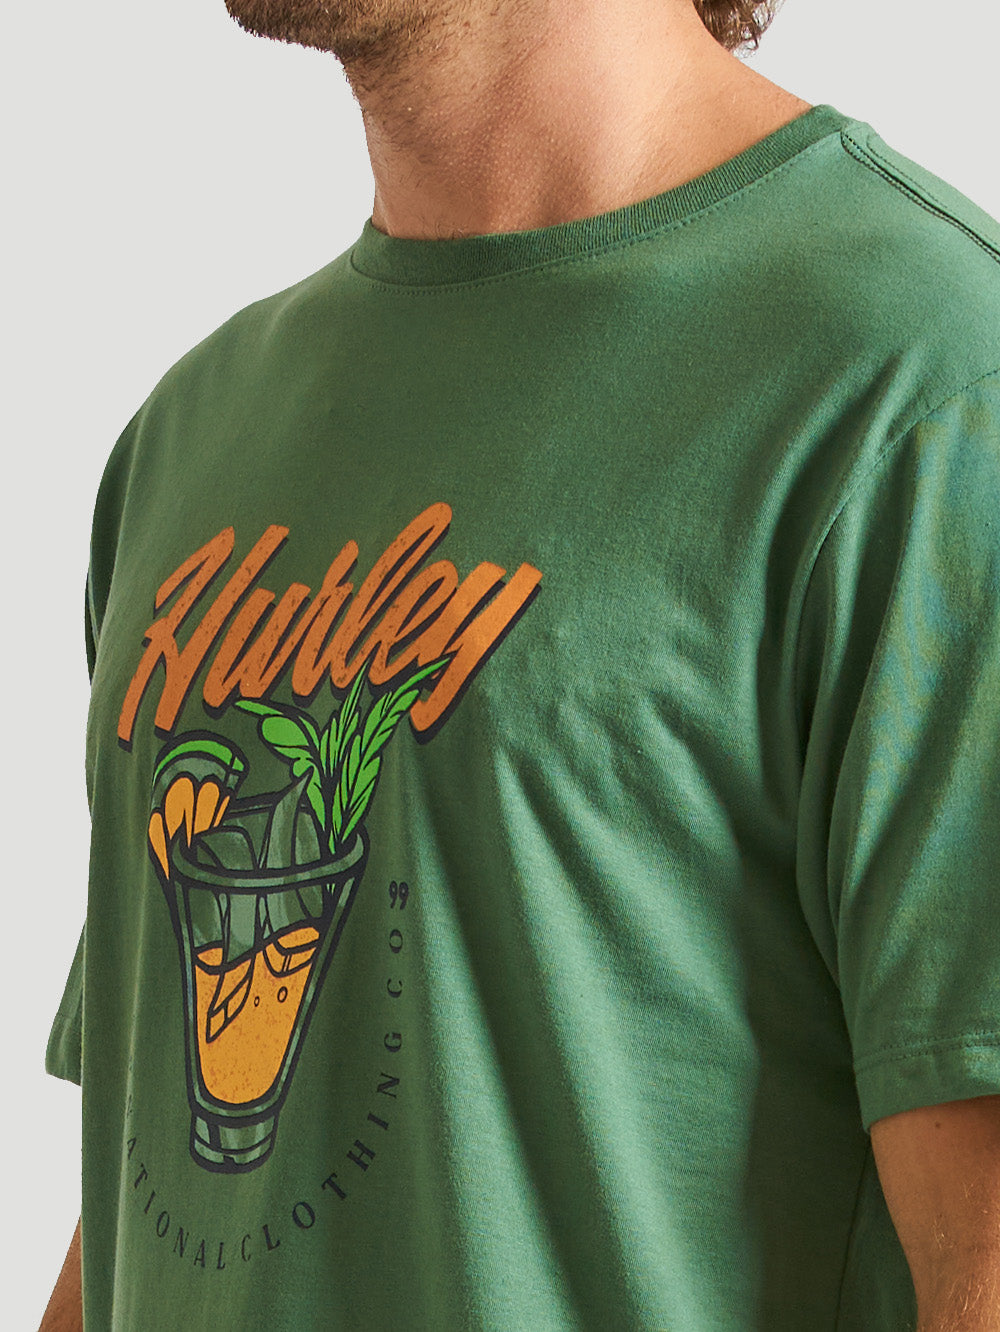 Camiseta Hurley Drink Verde